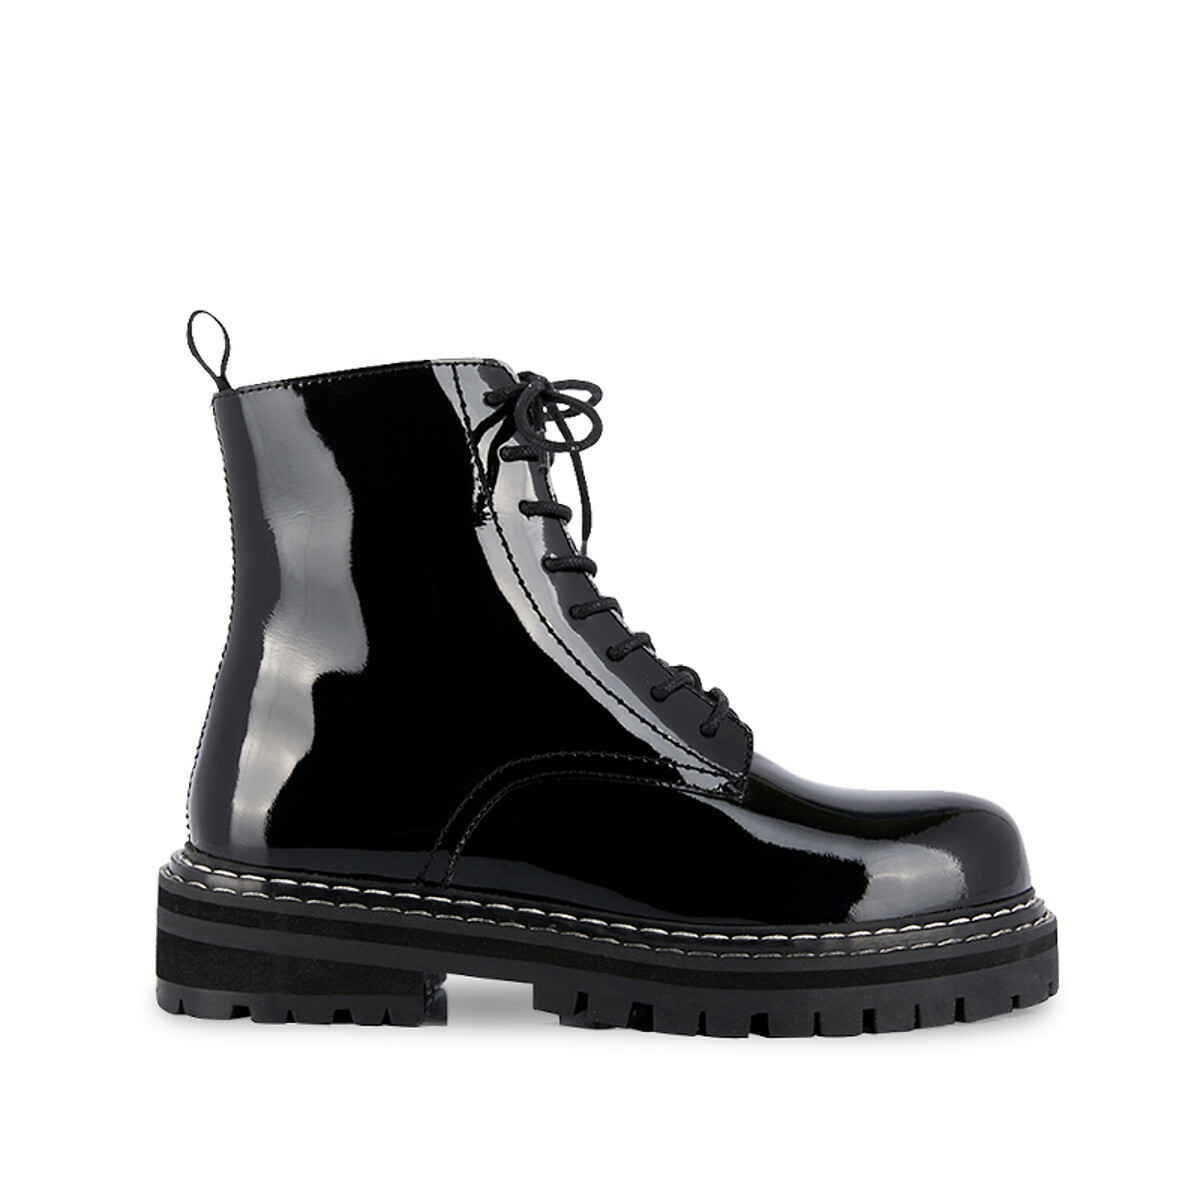 Reine leather lace-up ankle boots , black patent, Les Tropeziennes Par ...